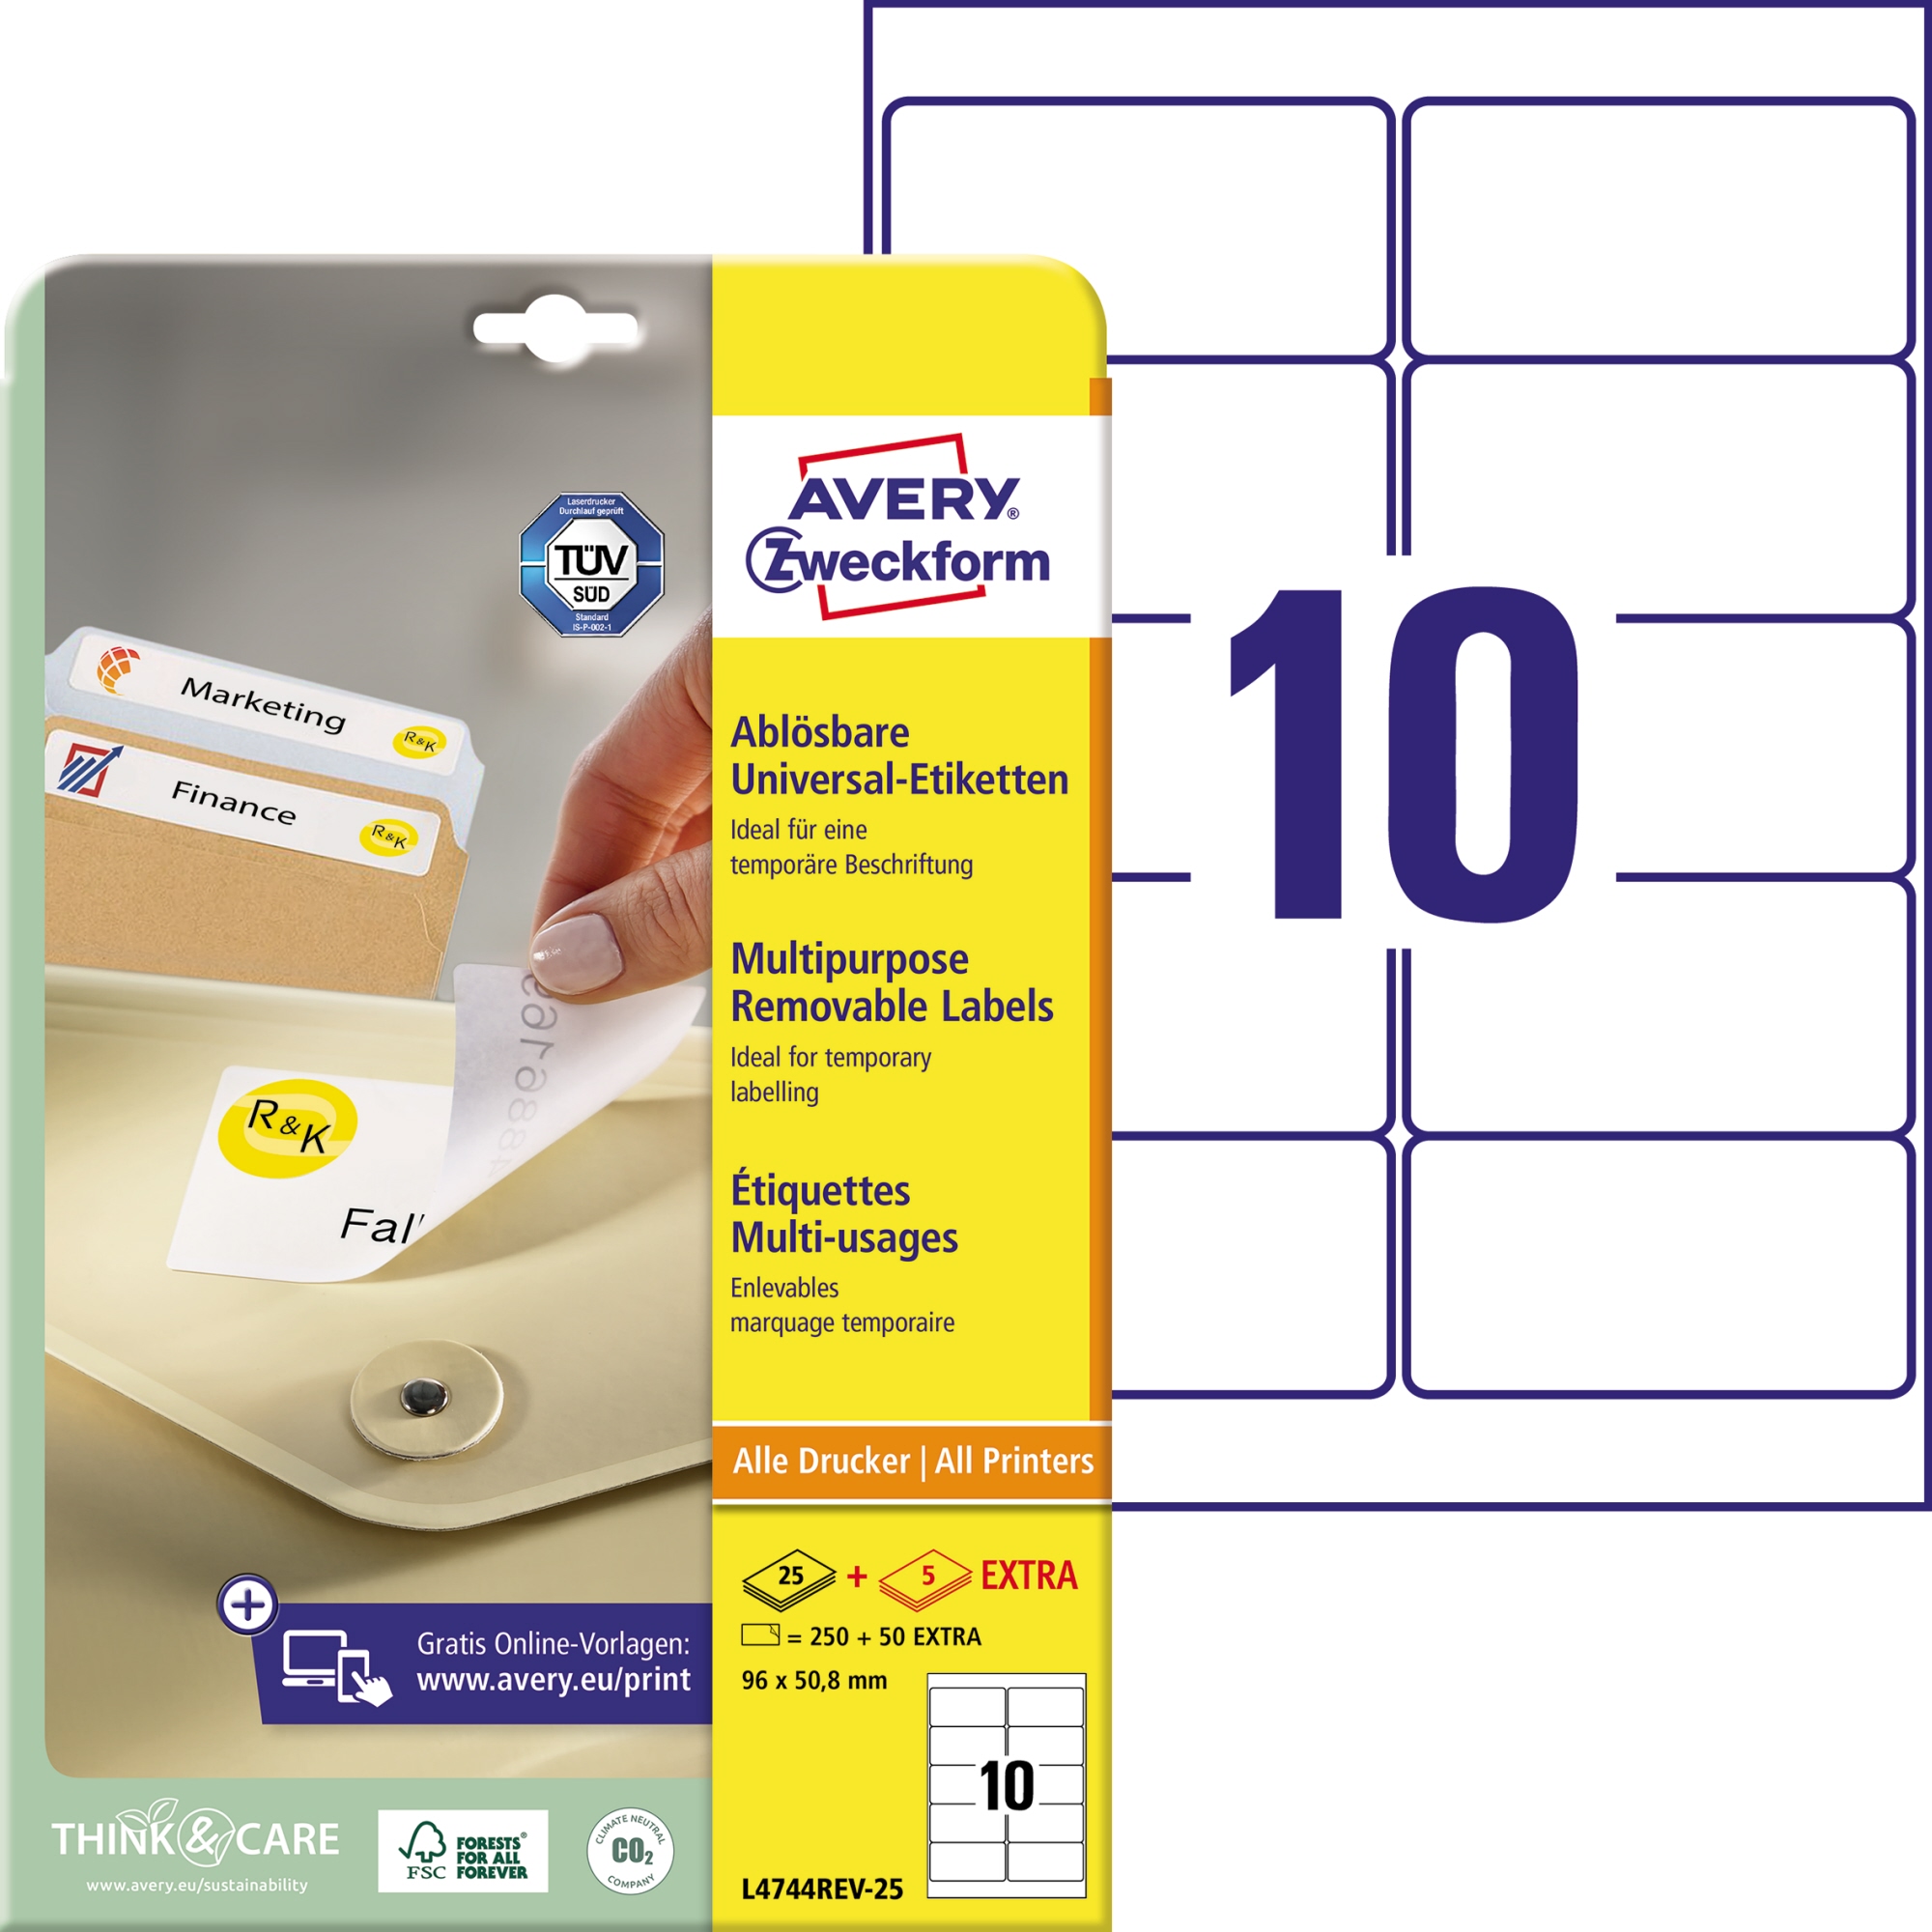 Avery Zweckform Universaletikett weiß, 96 x 50,8 mm, Vorteilspack + 5 Blatt gratis